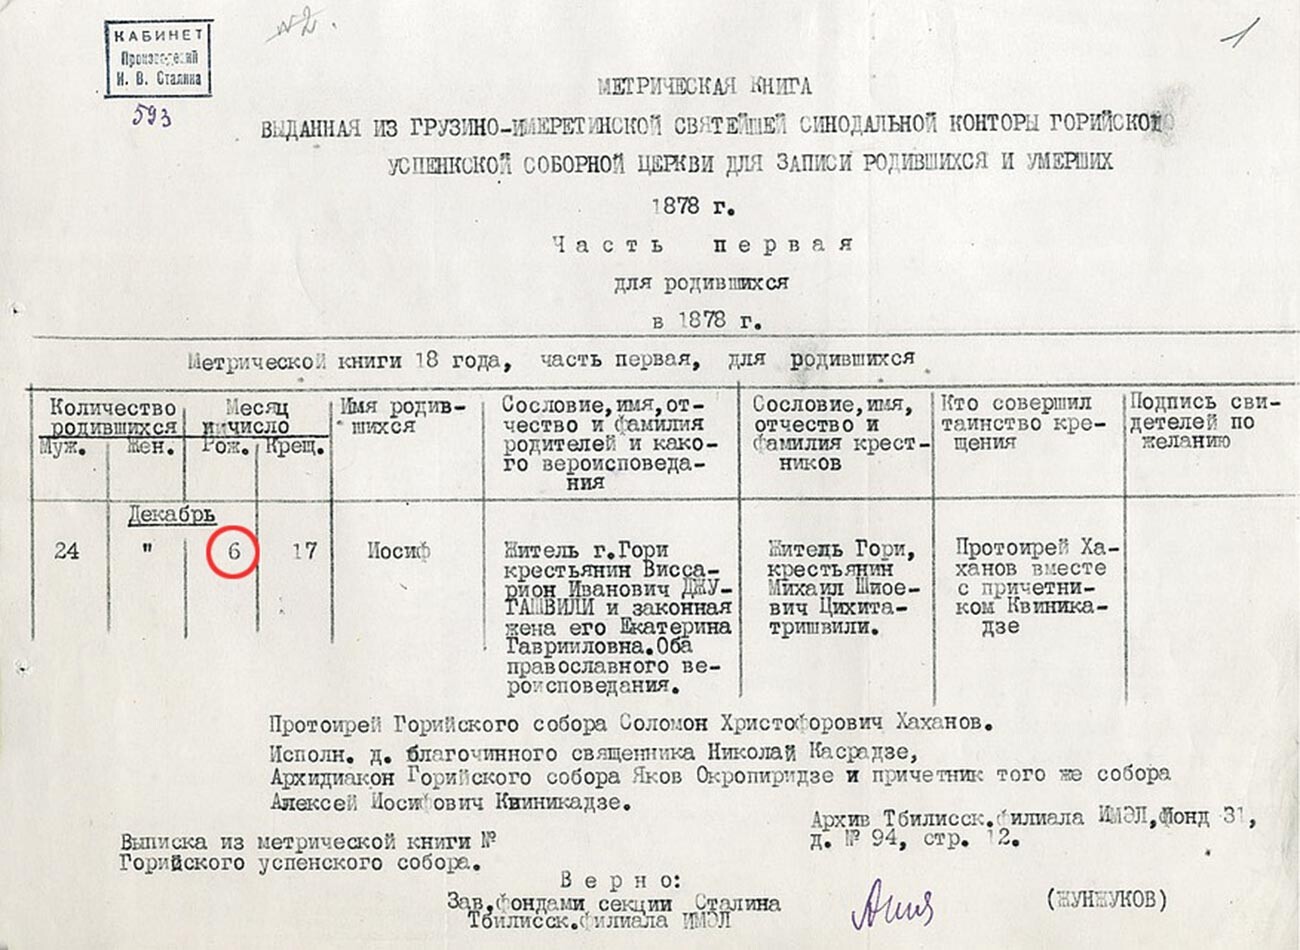 Das metrische Buch der Mariä-Entschlafens-Kirche in Gori, aus dem hervorgeht, dass Stalin am 6. Dezember O.S. geboren wurde.